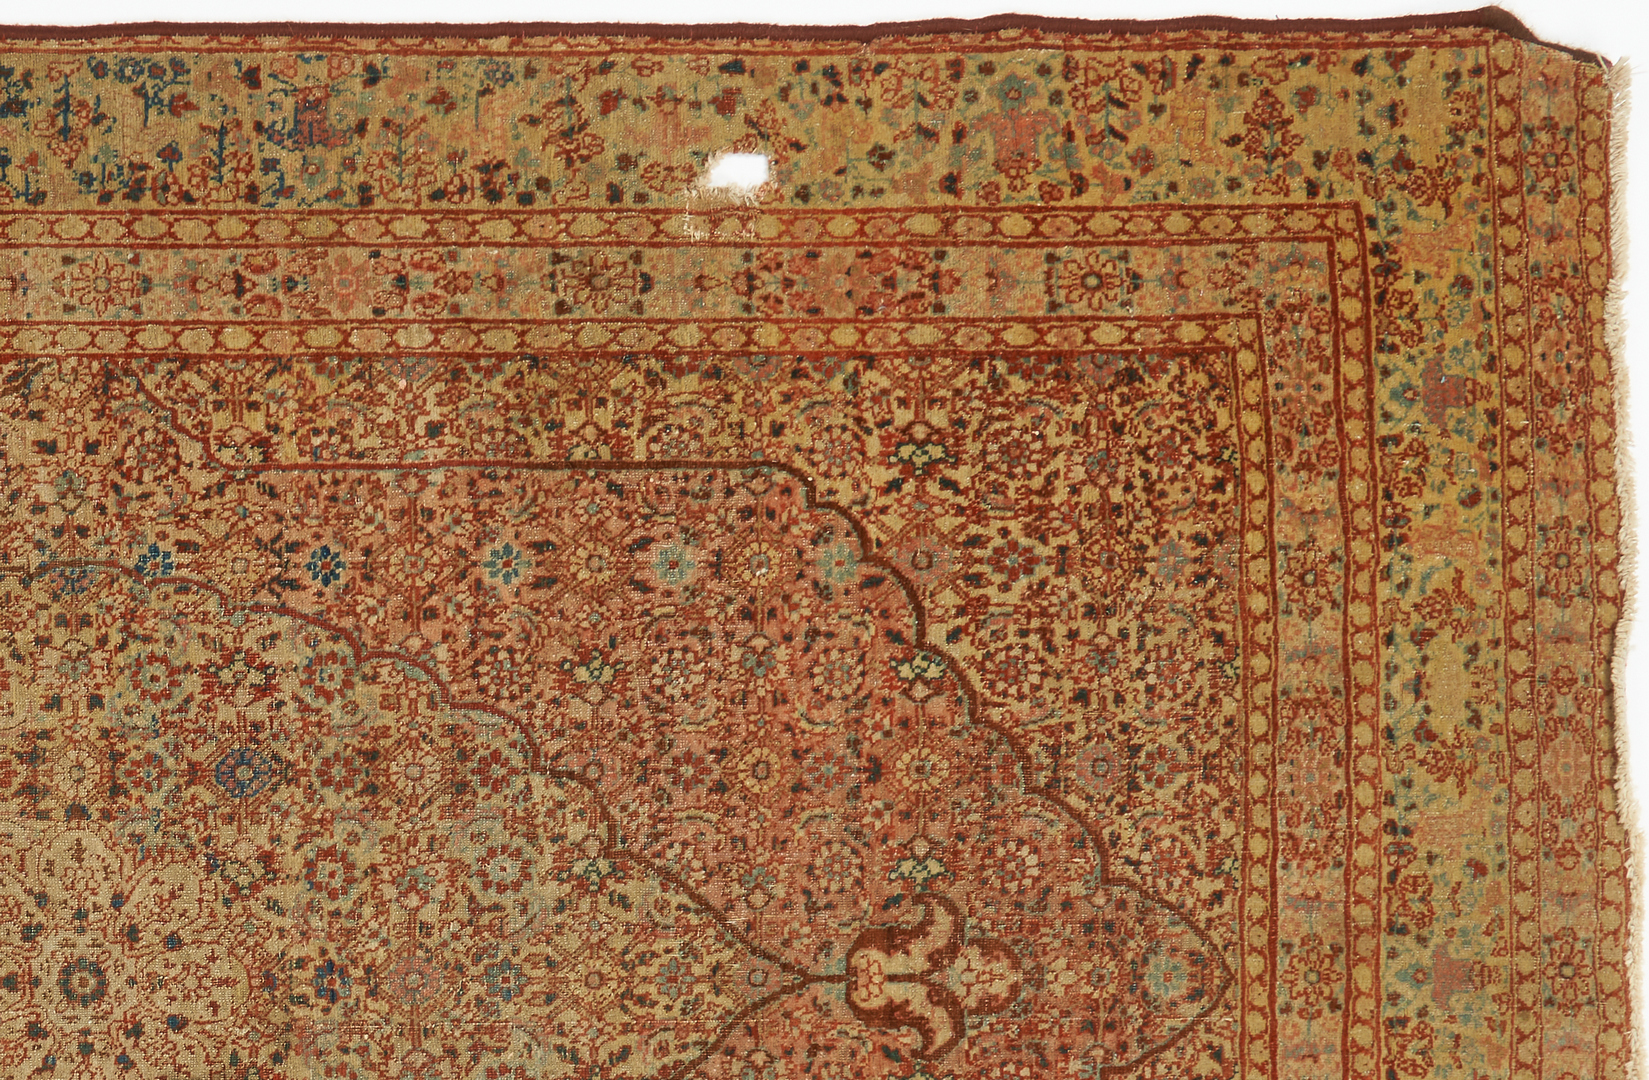 Lot 699: 2 Tabriz Carpets, approx. 6' x 4'